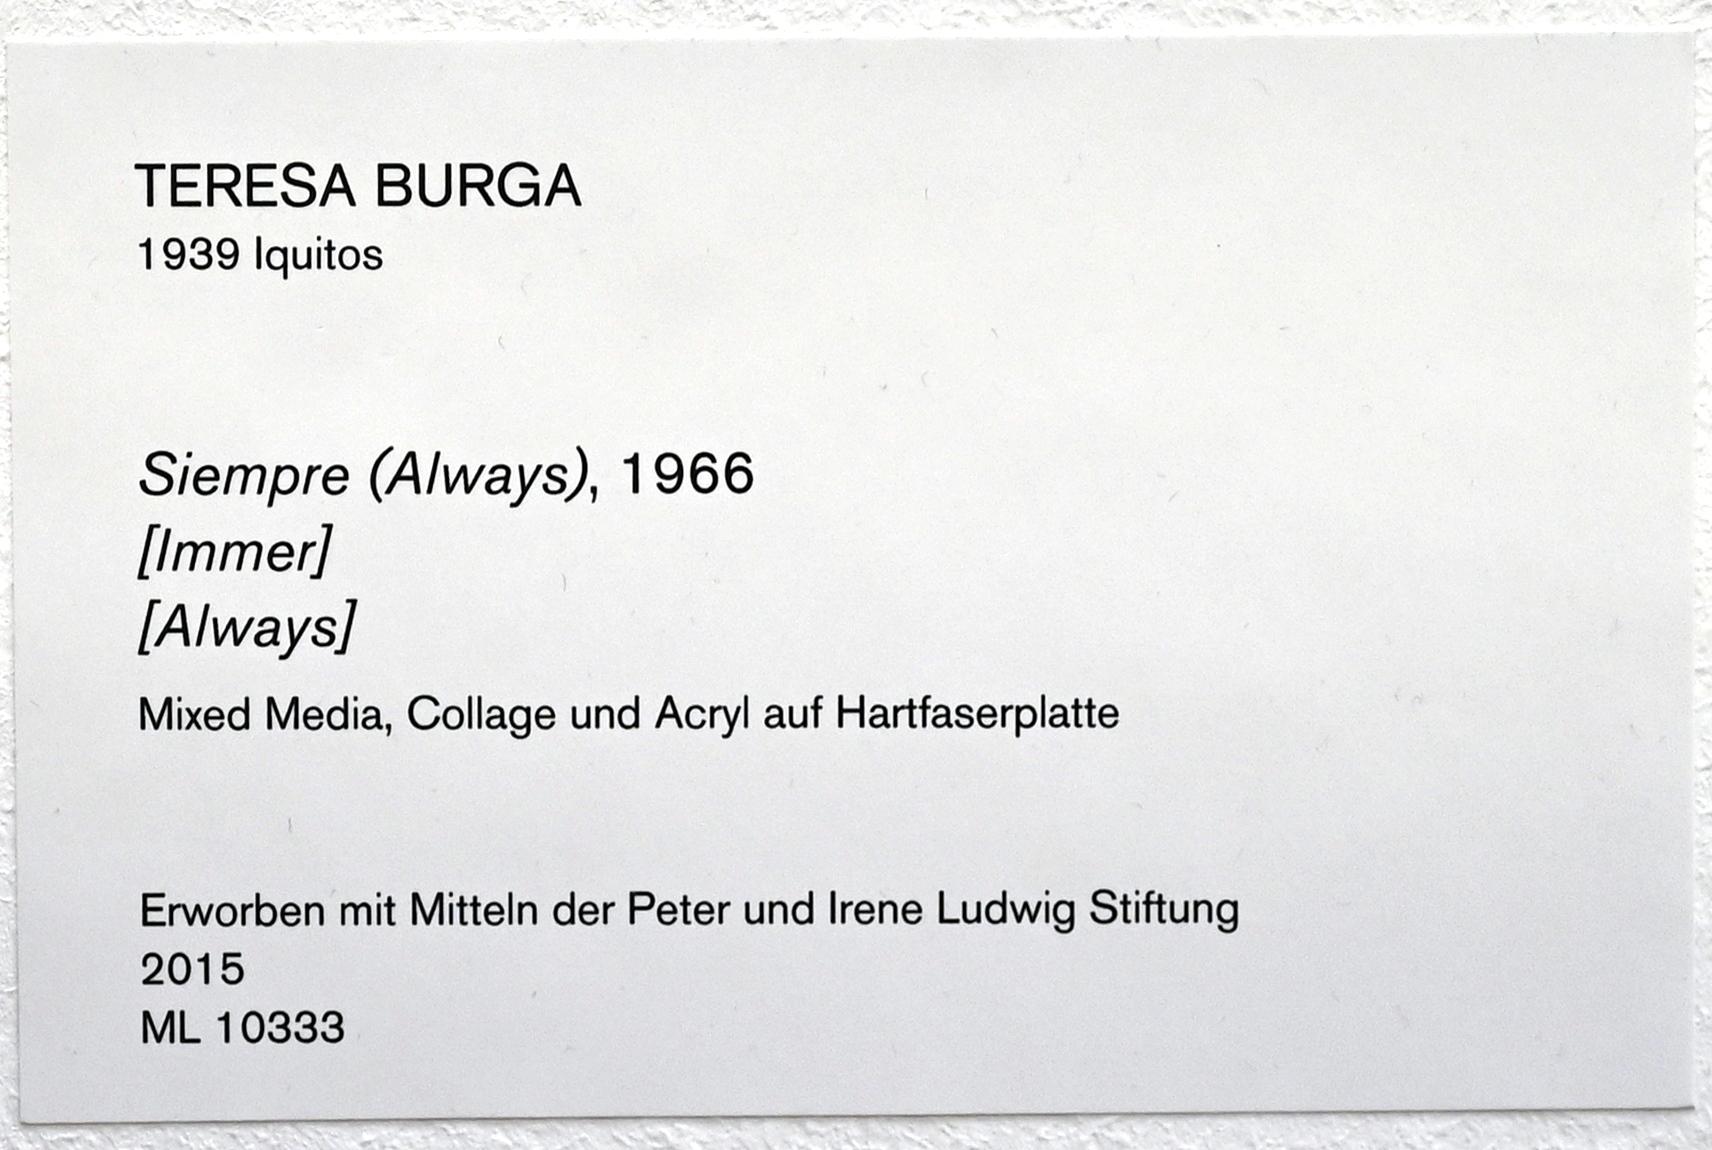 Teresa Burga (1966), Immer, Köln, Museum Ludwig, 01.10, 1966, Bild 2/2